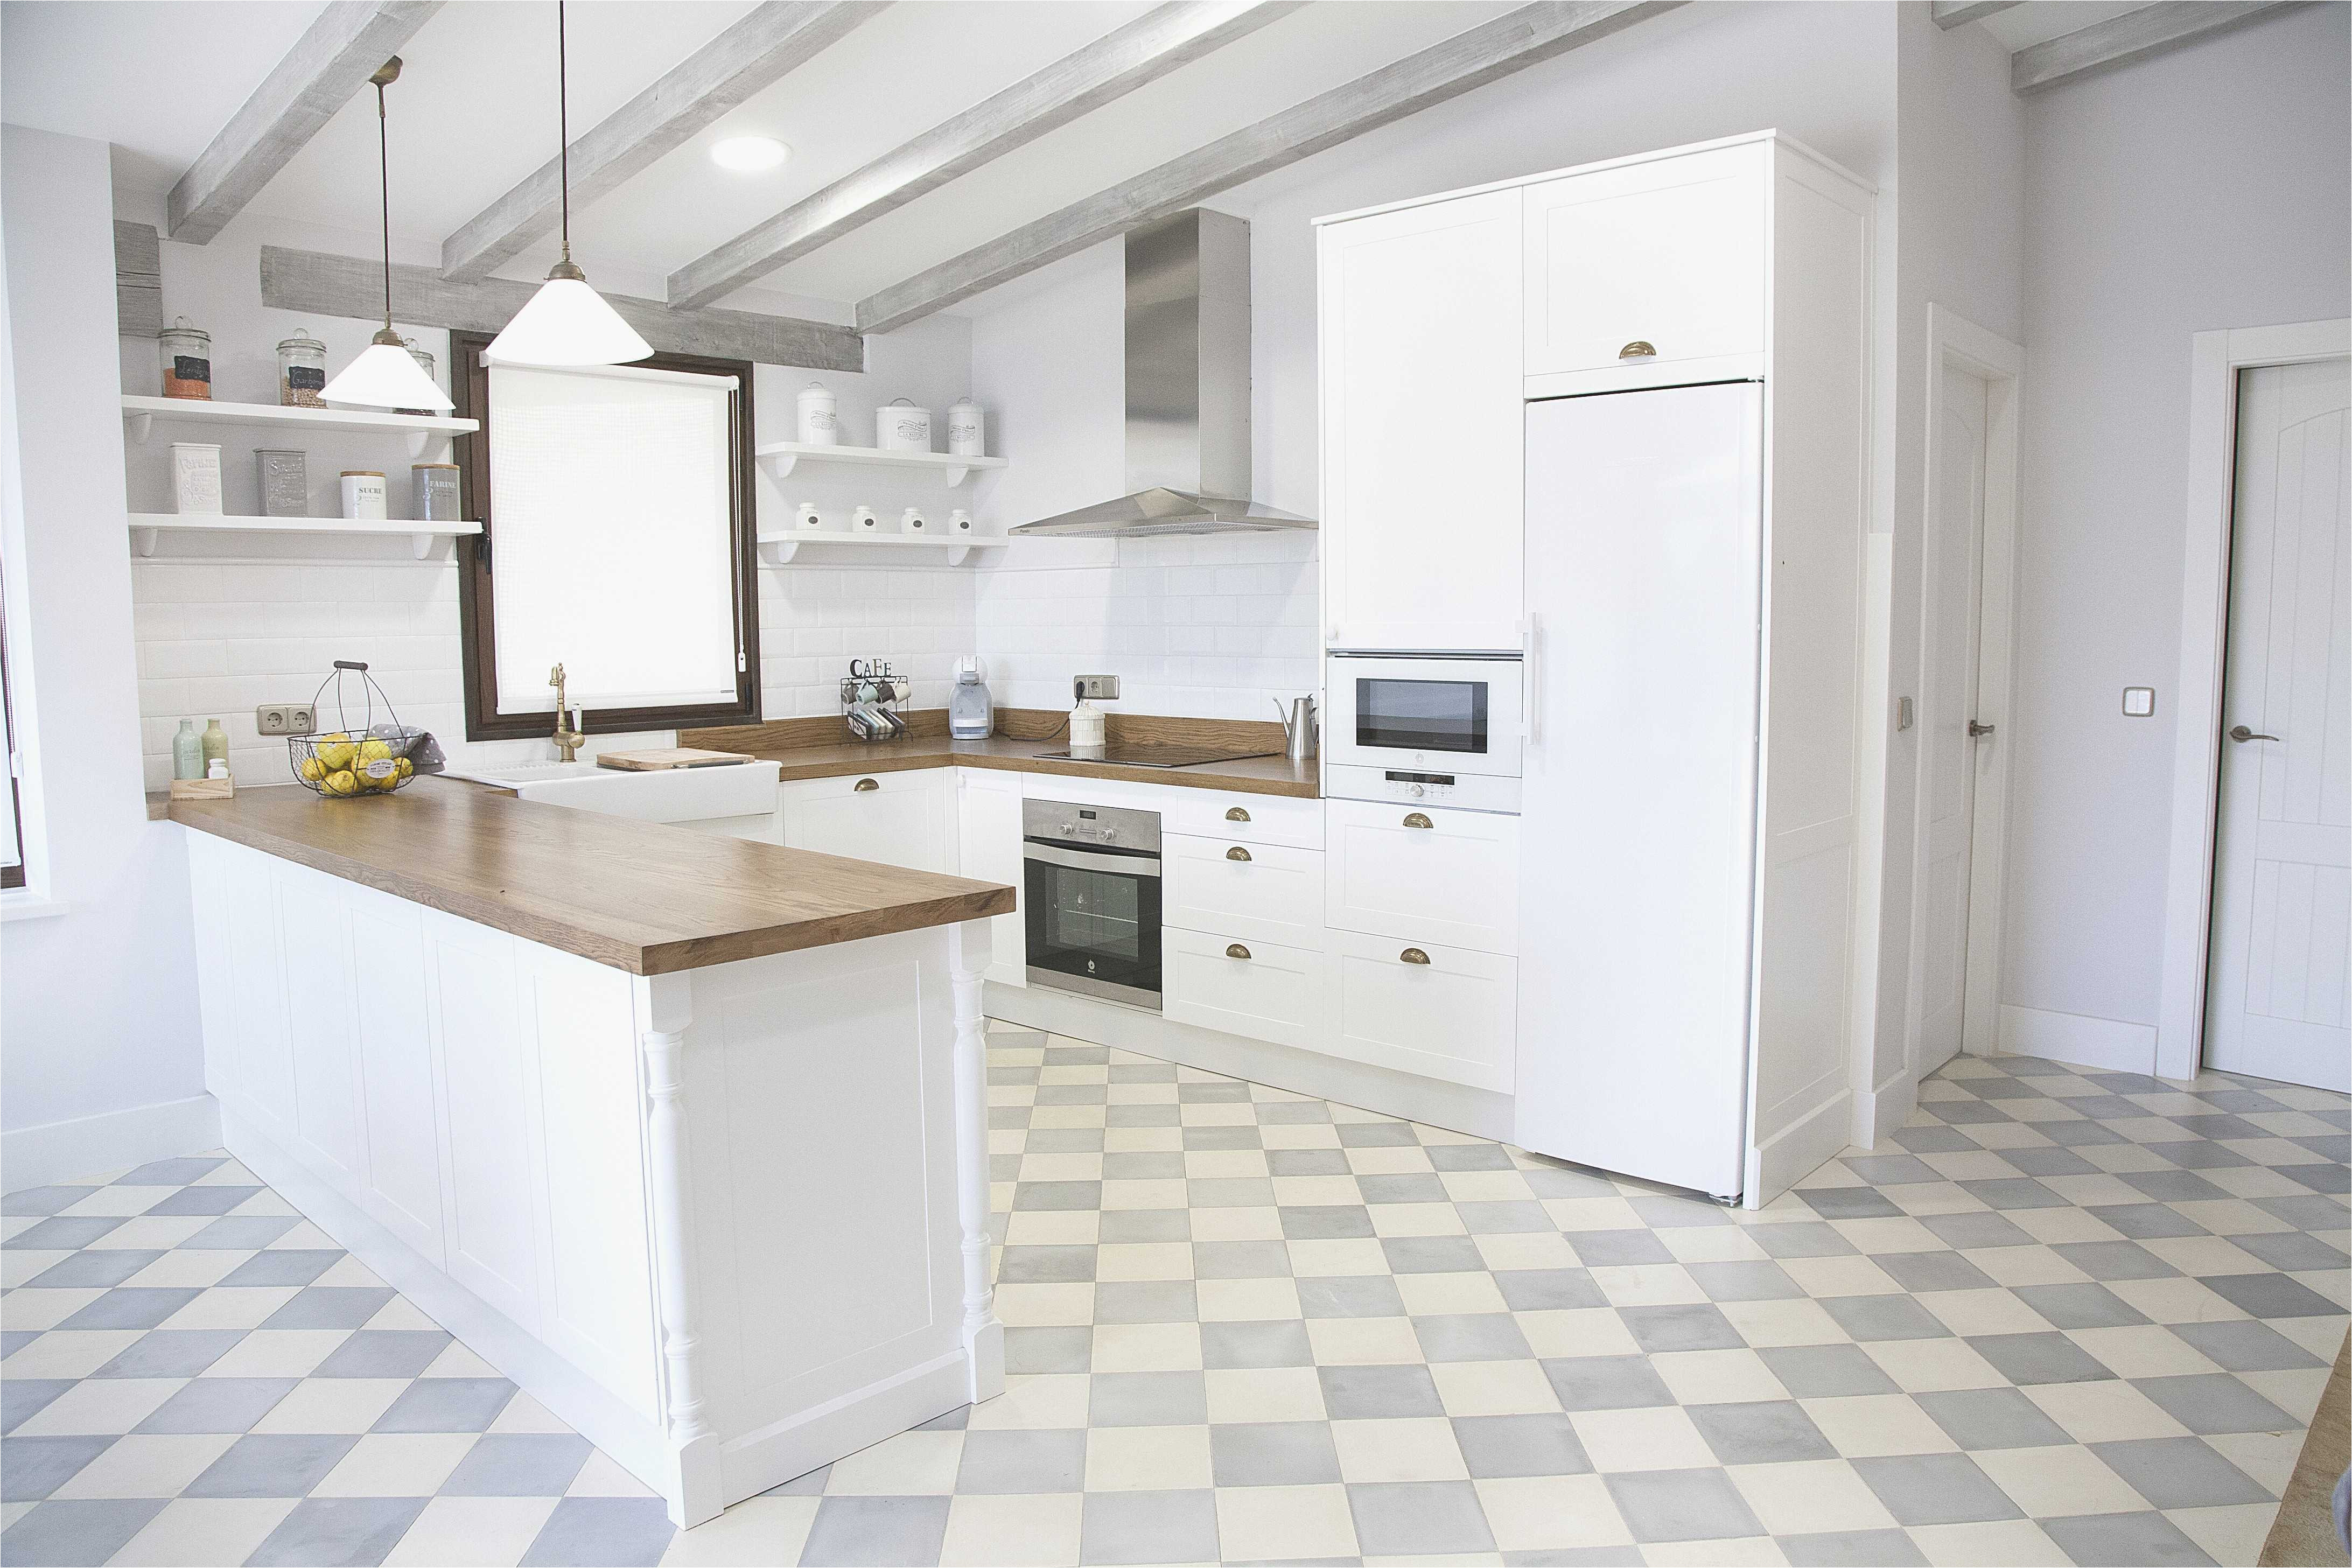 suelos para cocinas blancas hacia enorme cocina blanca y encimera madera perfect clic para ver en detalle proyecto para suelos para cocinas blancas jpg